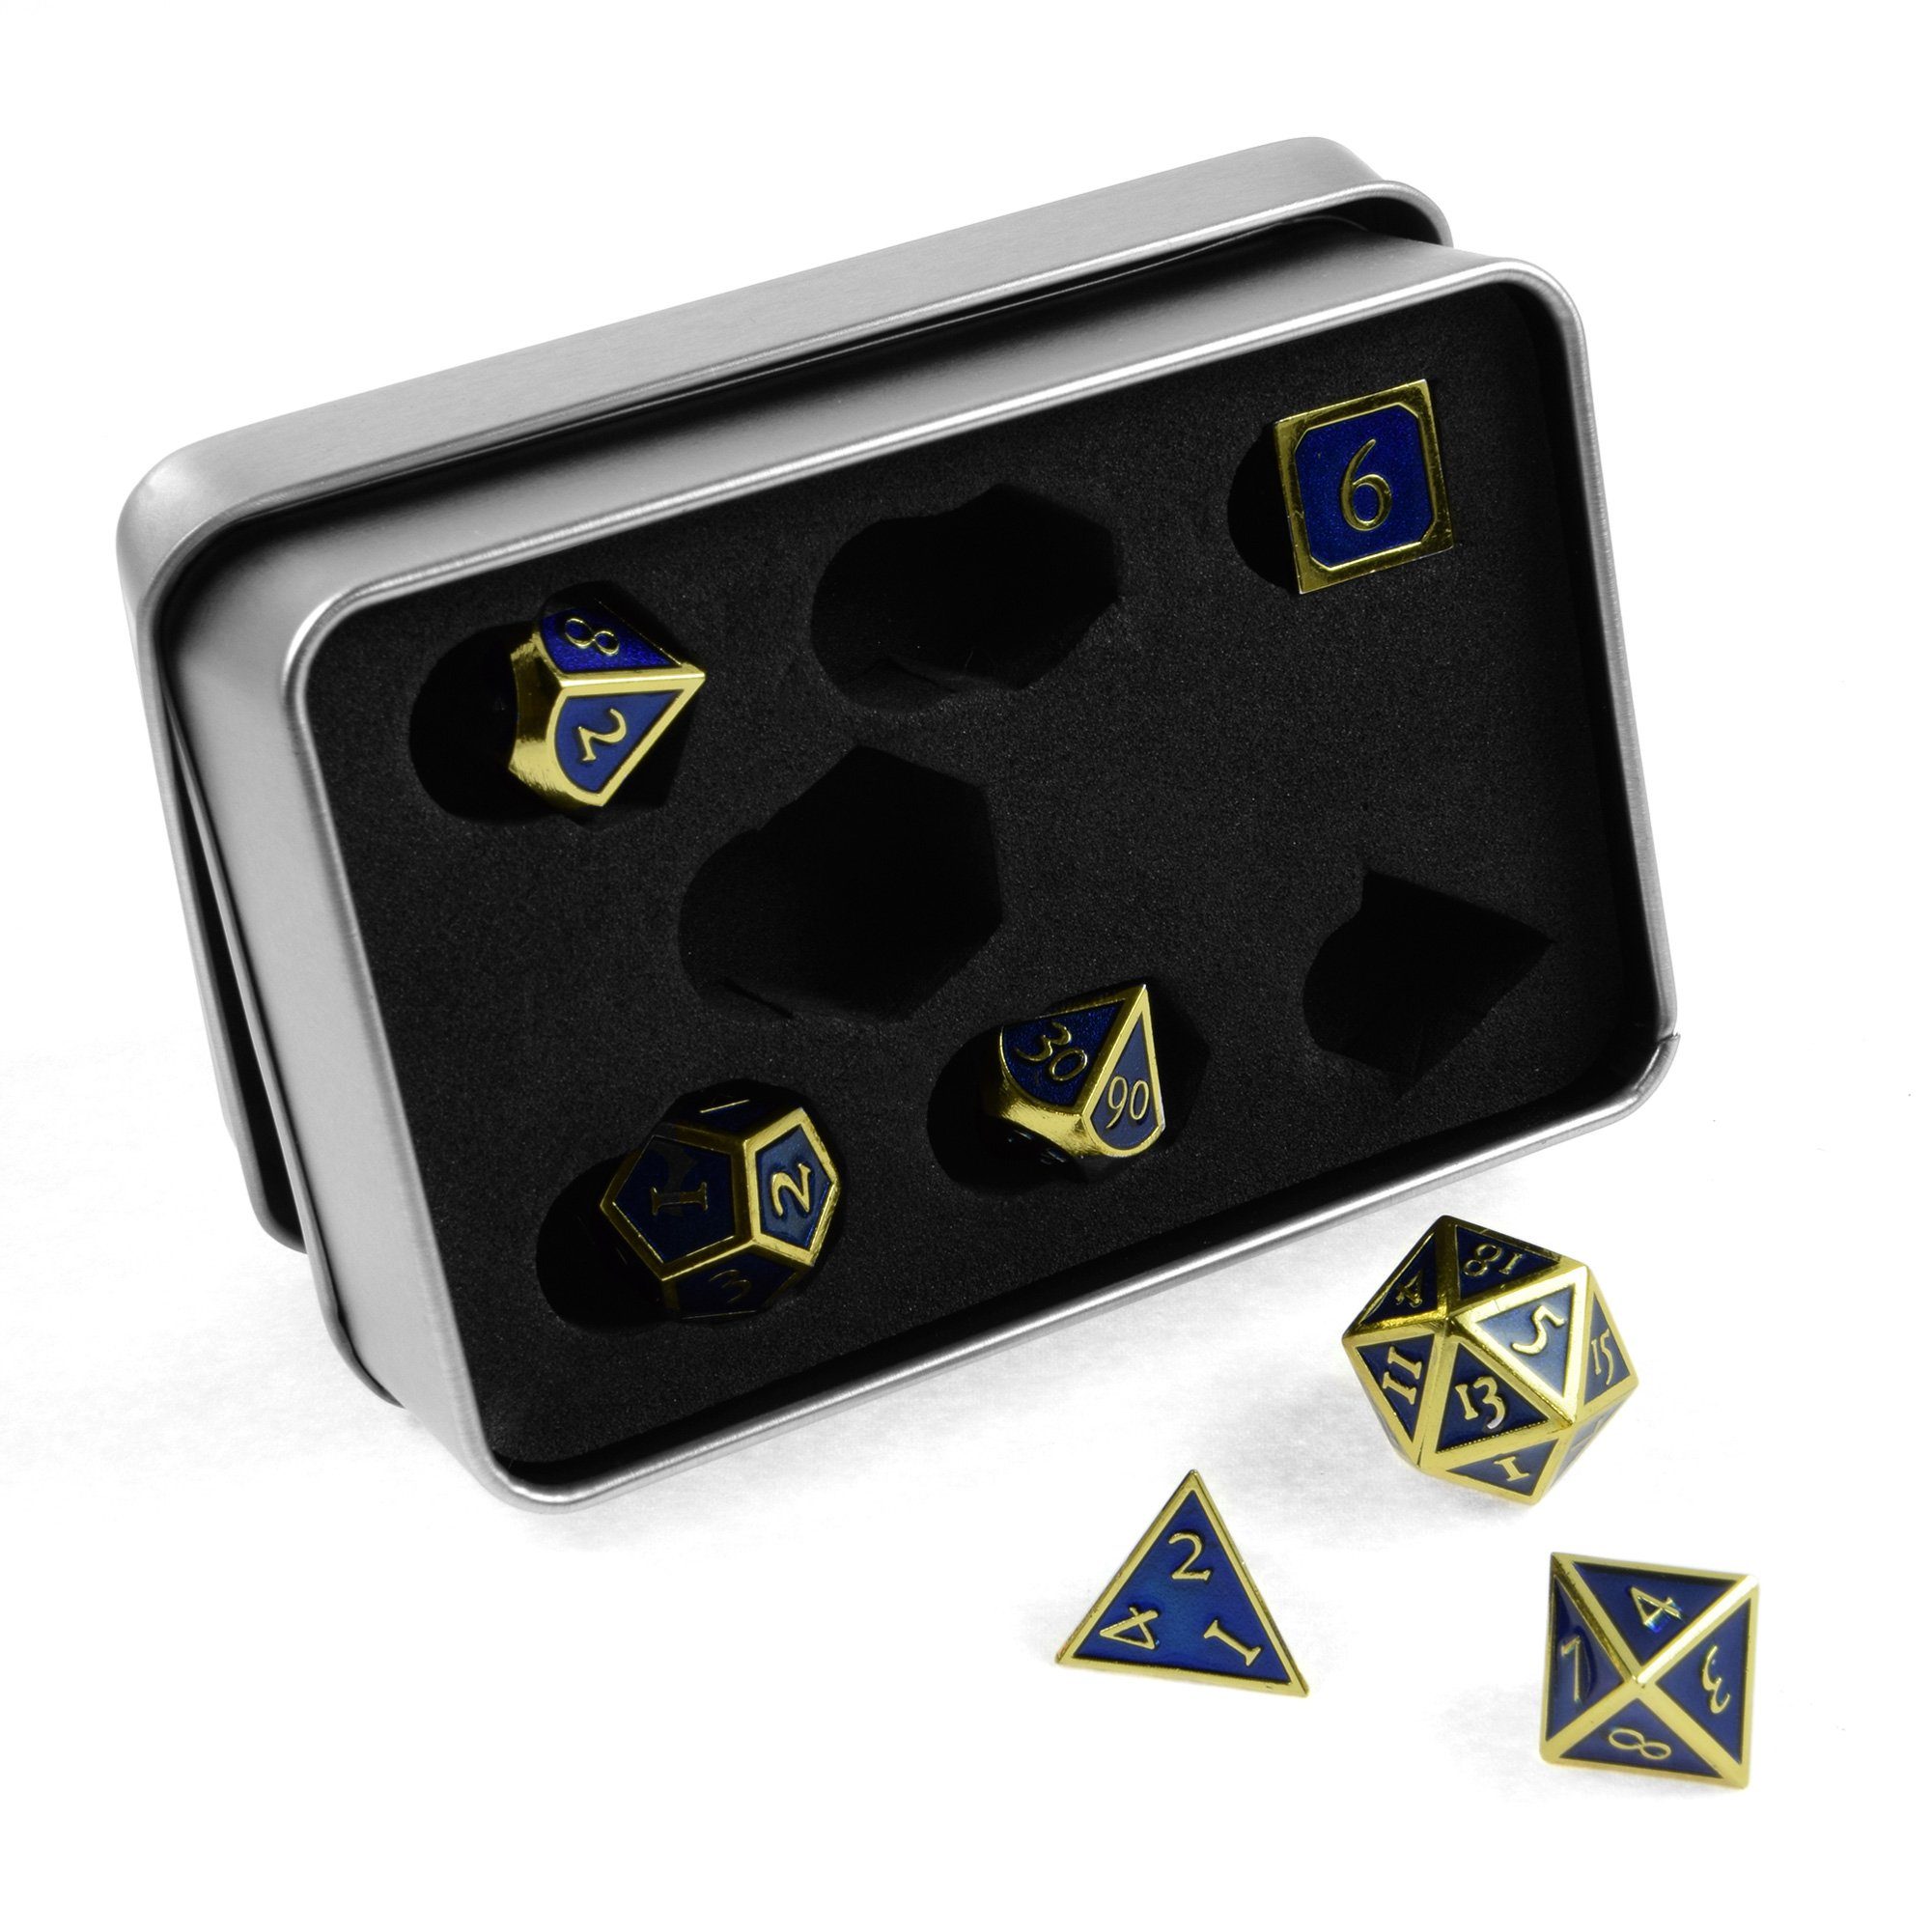 SHIBBY Spielesammlung, 7 polyedrische Metall-DND-Würfel in Steampunk Optik, inkl. Aufbewahrungsbox Gold/Blau